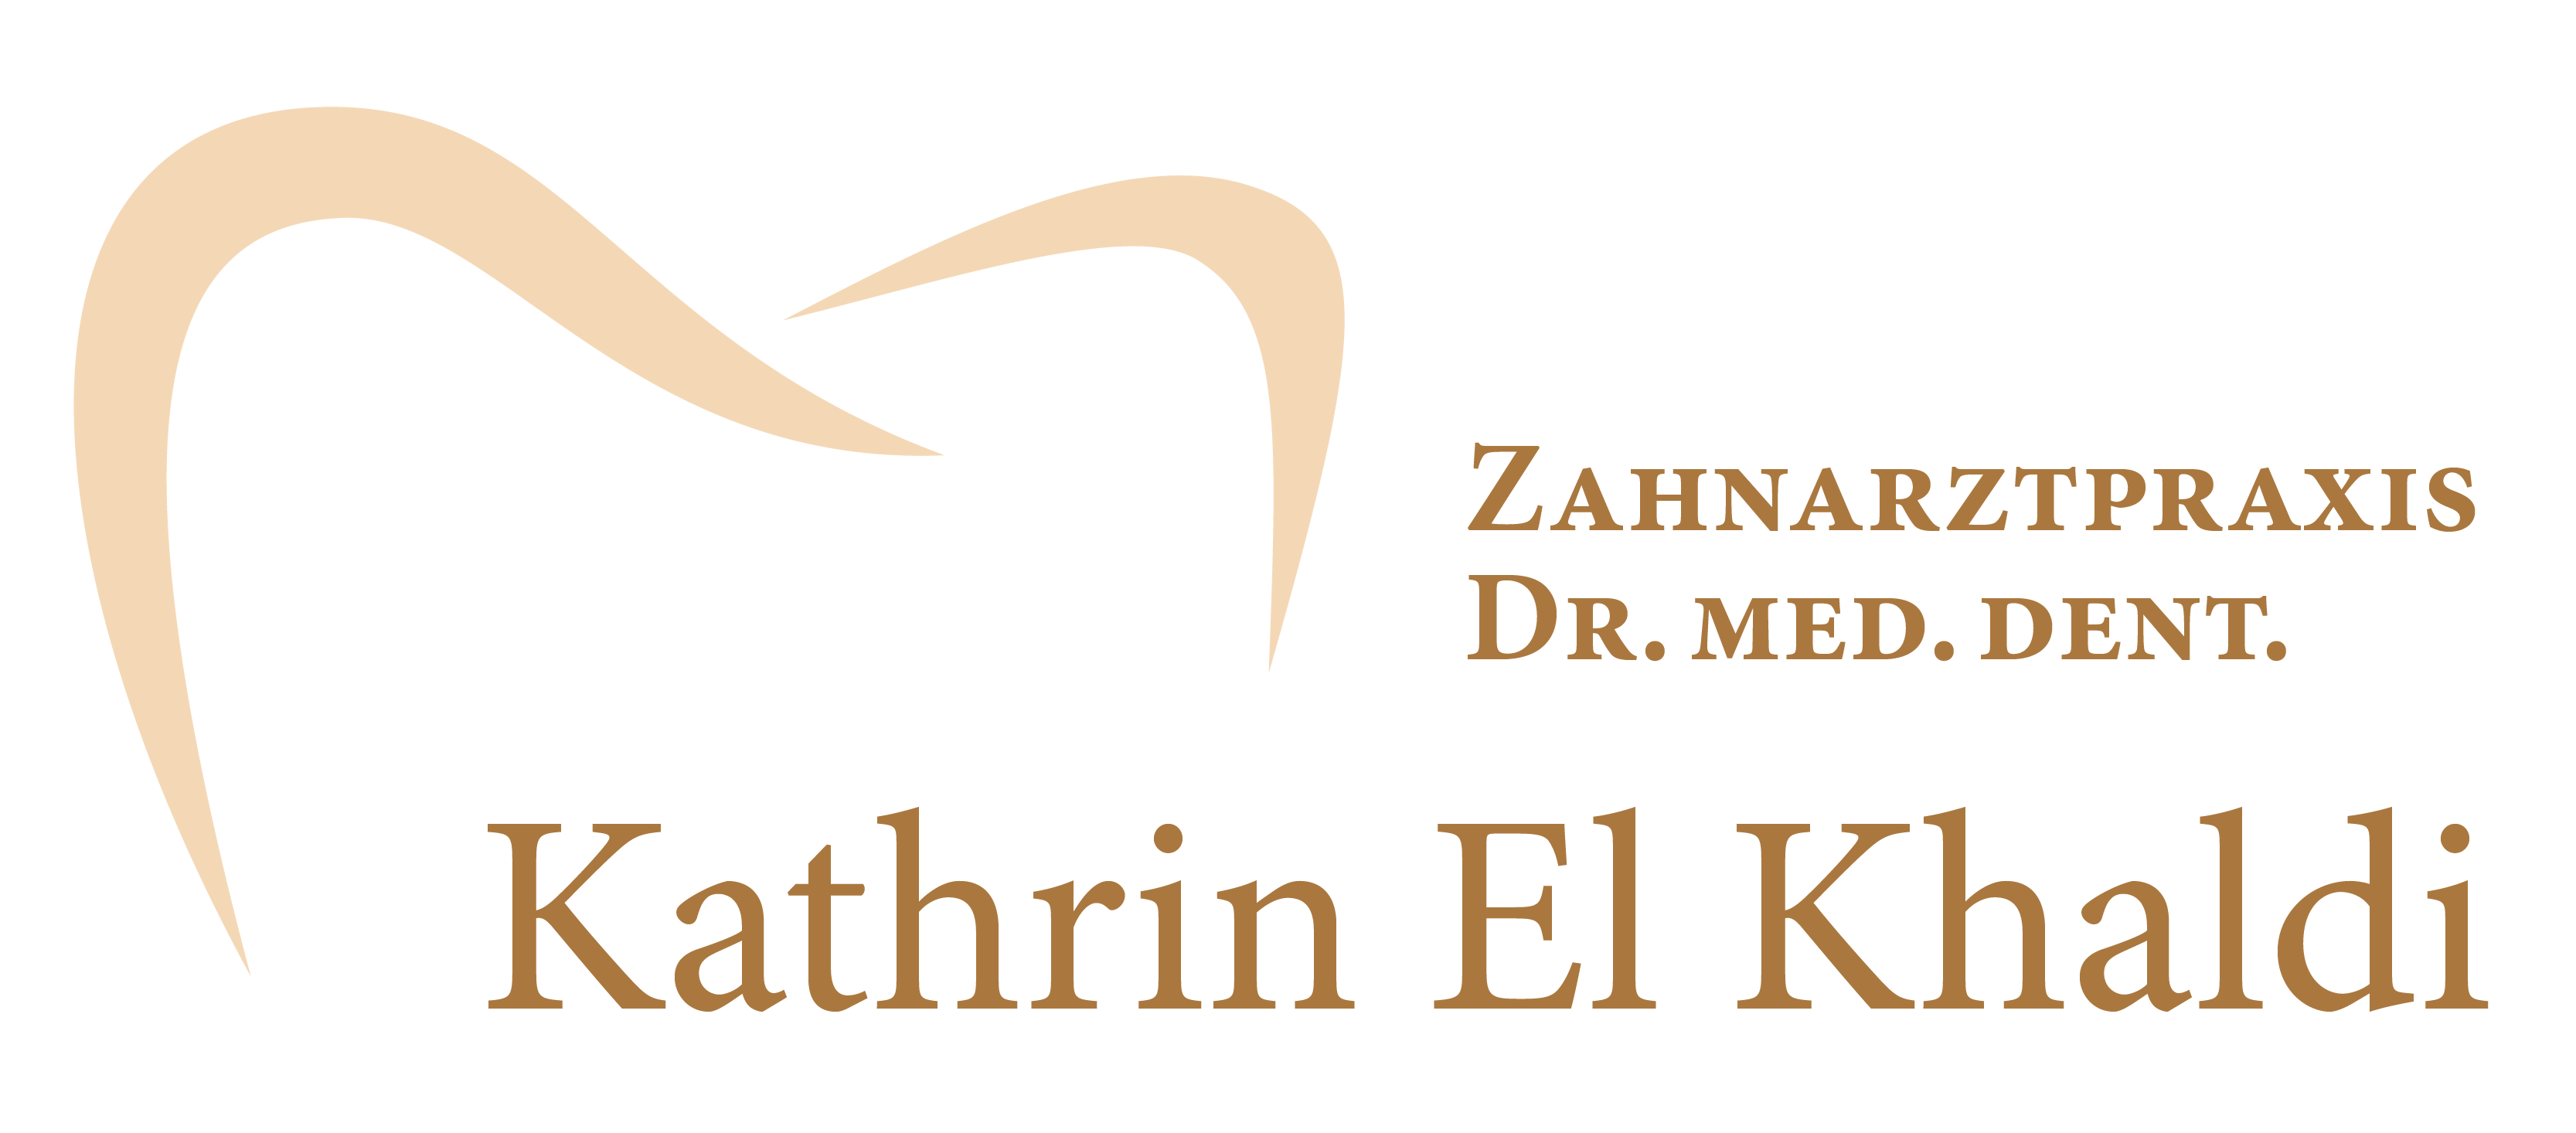 Zahnarztpraxis Dr. med. dent. Kathrin El Khaldi